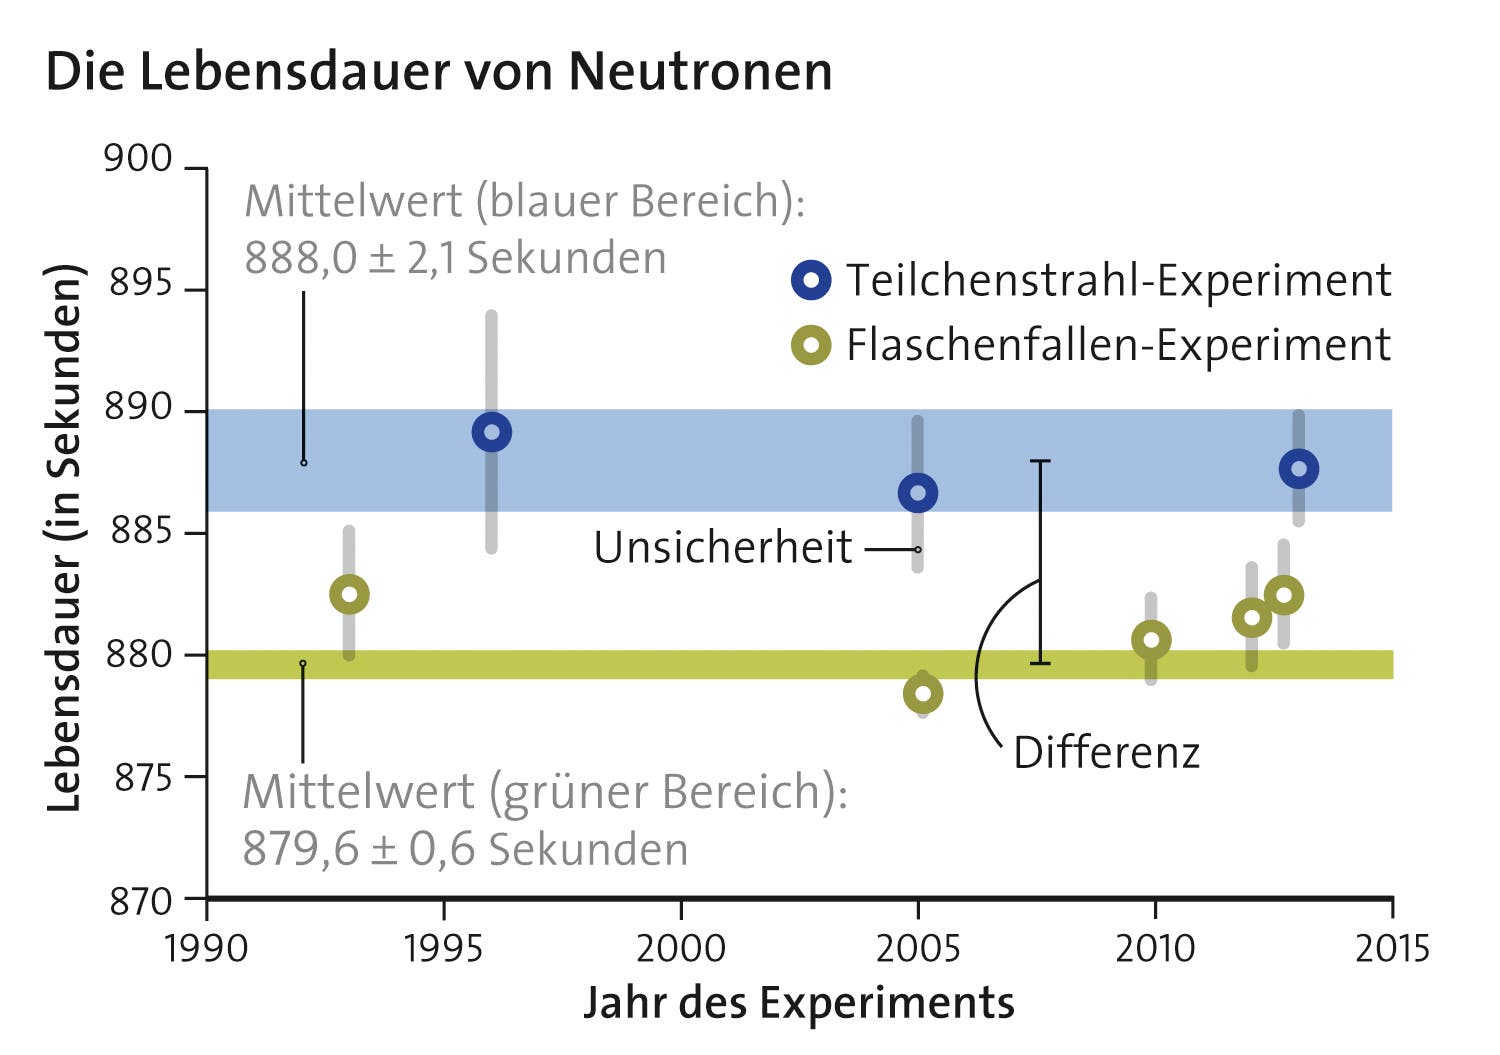 Neutronenzerfall: gemessener Unterschied zwischen Flaschenfallen- und Teilchenstrahlexperiment